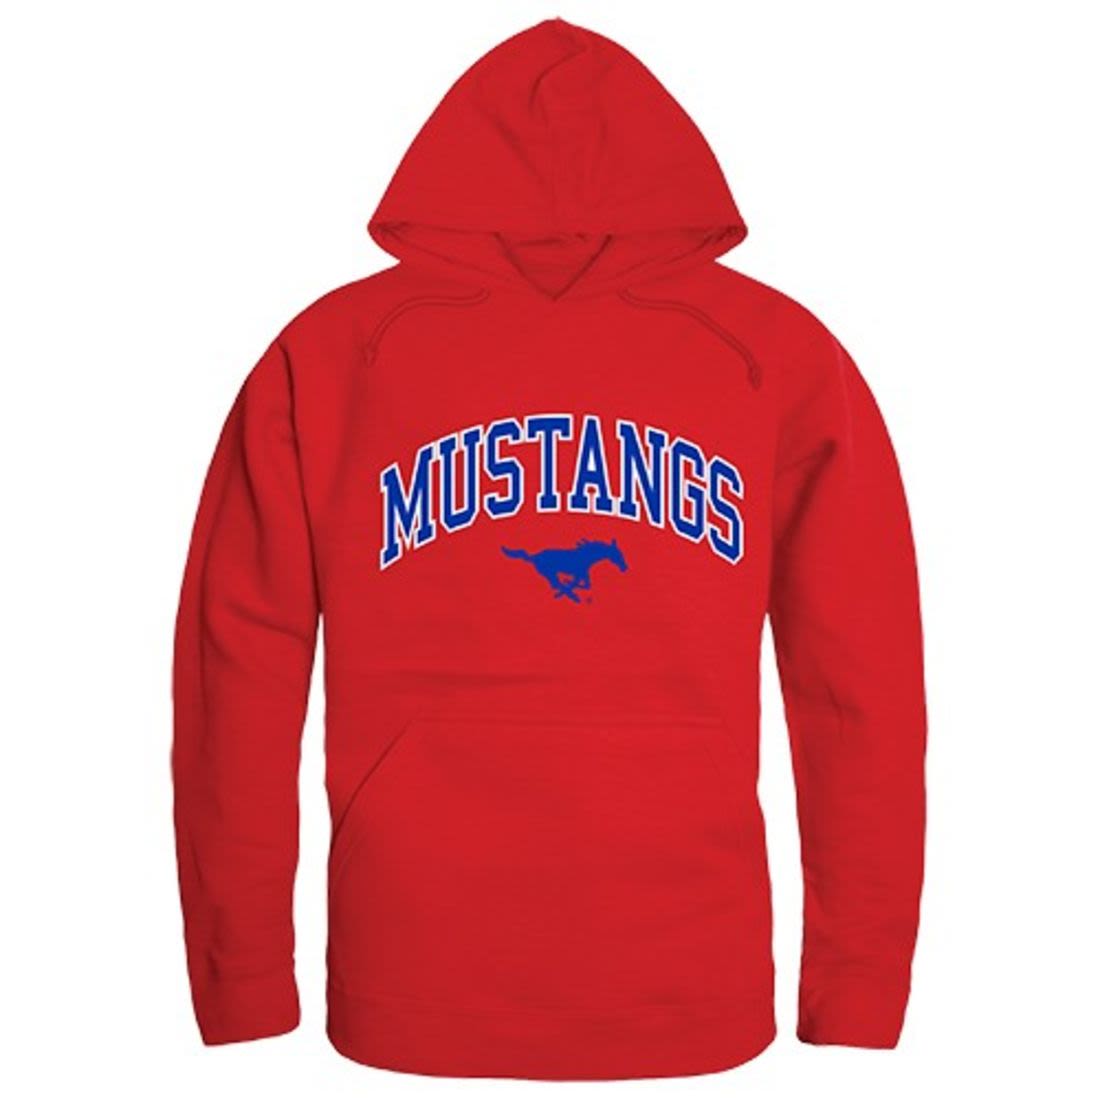 Southern Methodist University Mustangs Campus Hoodie Sweatshirt Red-Campus-Wardrobe